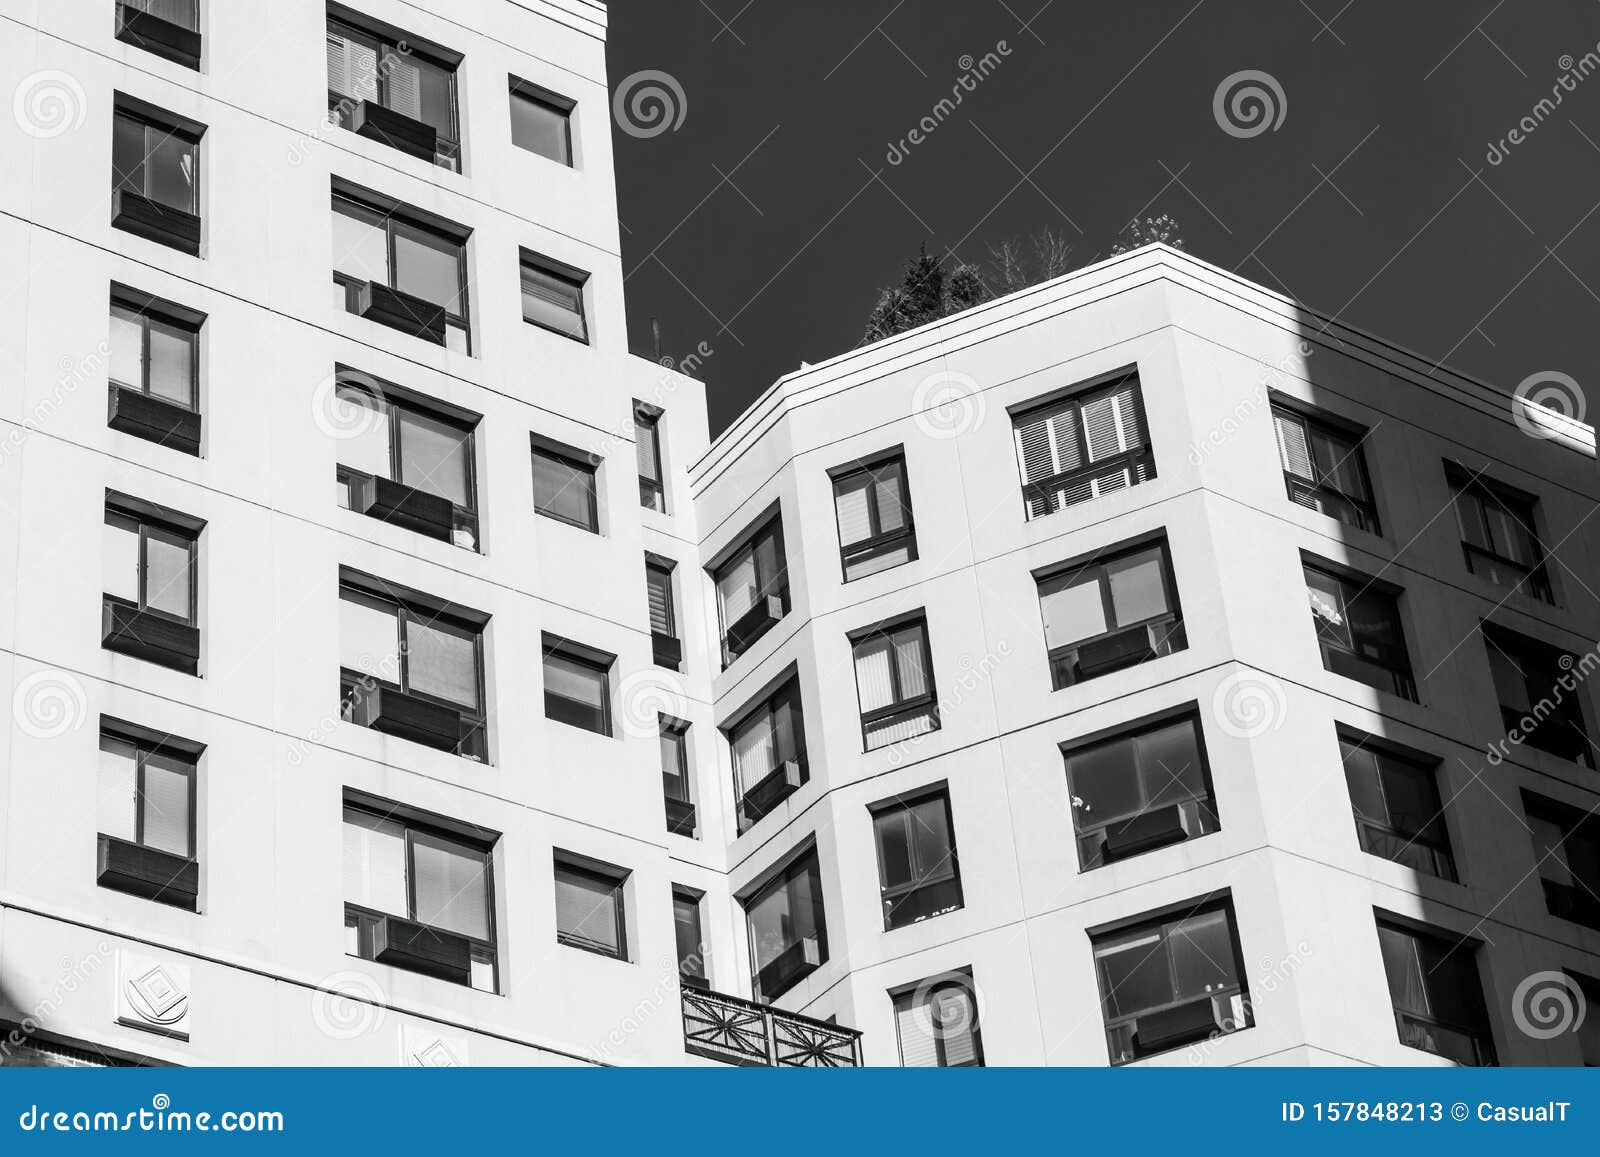 En Regardant La Facade D Un Immeuble Moderne A Manhattan New York City Usa Noir Et Blanc Image Stock Image Du Noir Concret